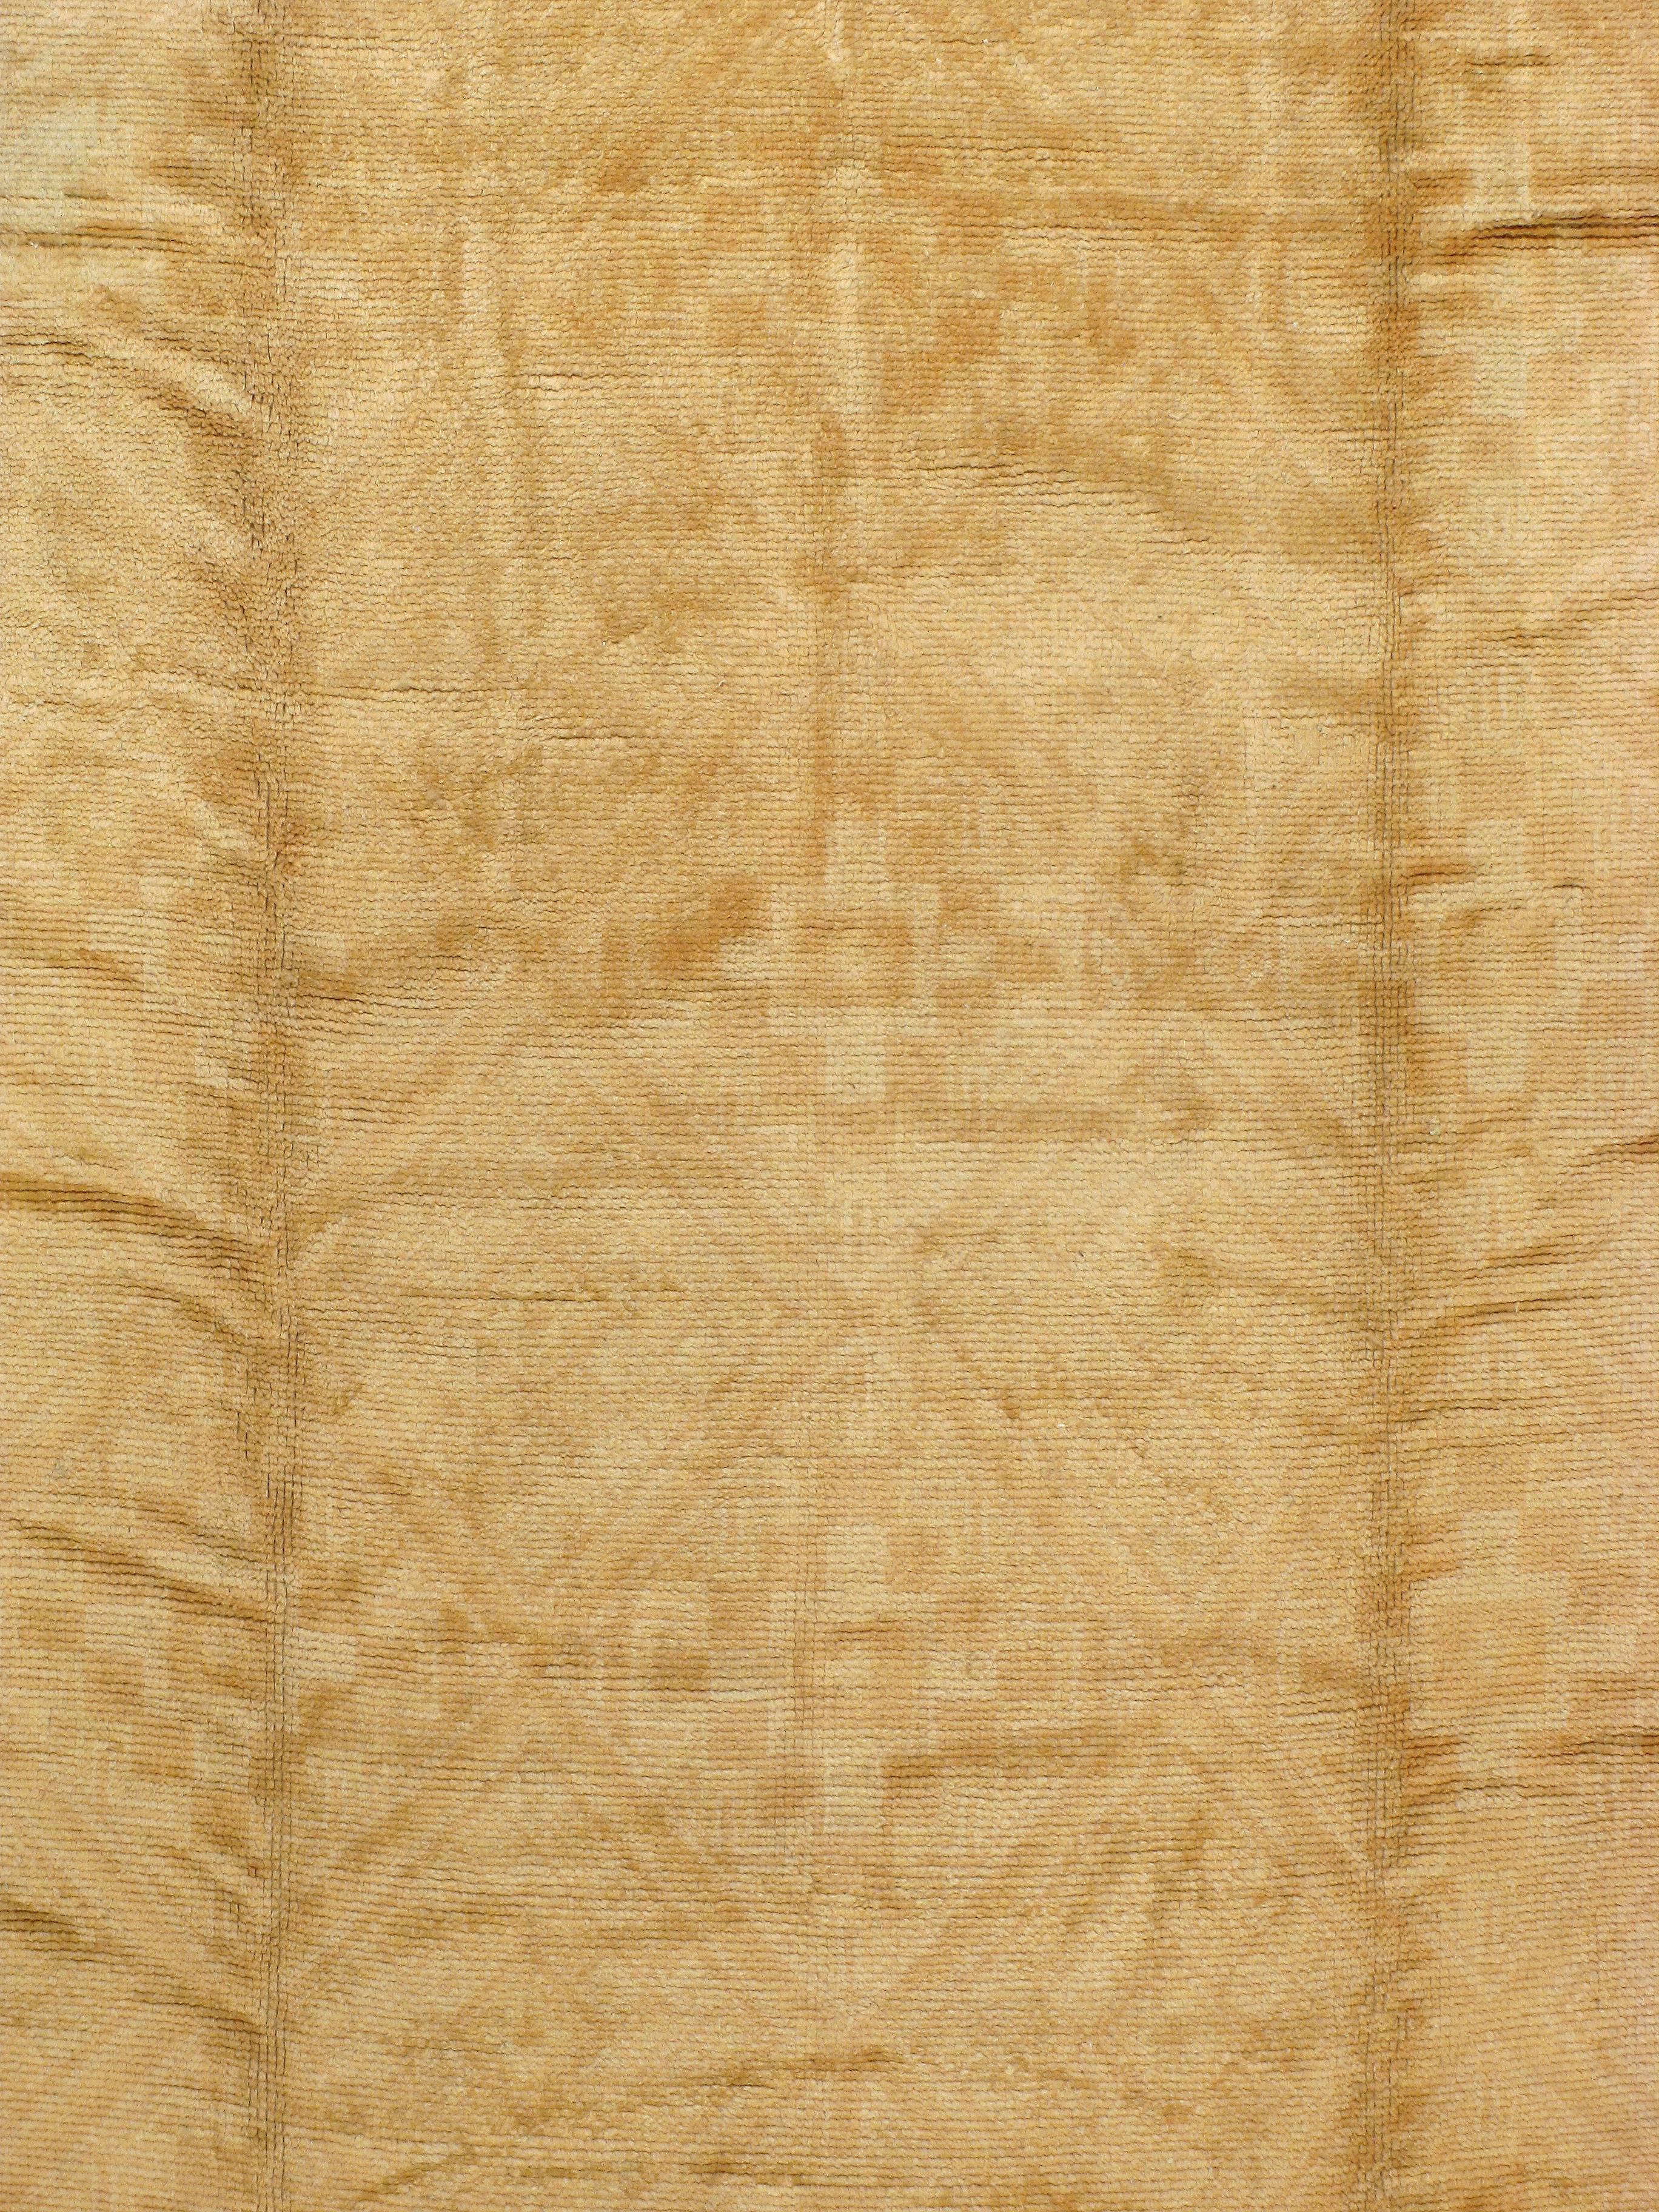 A mid-20th century Spanish Cuenca carpet.

Measures: 9' 2